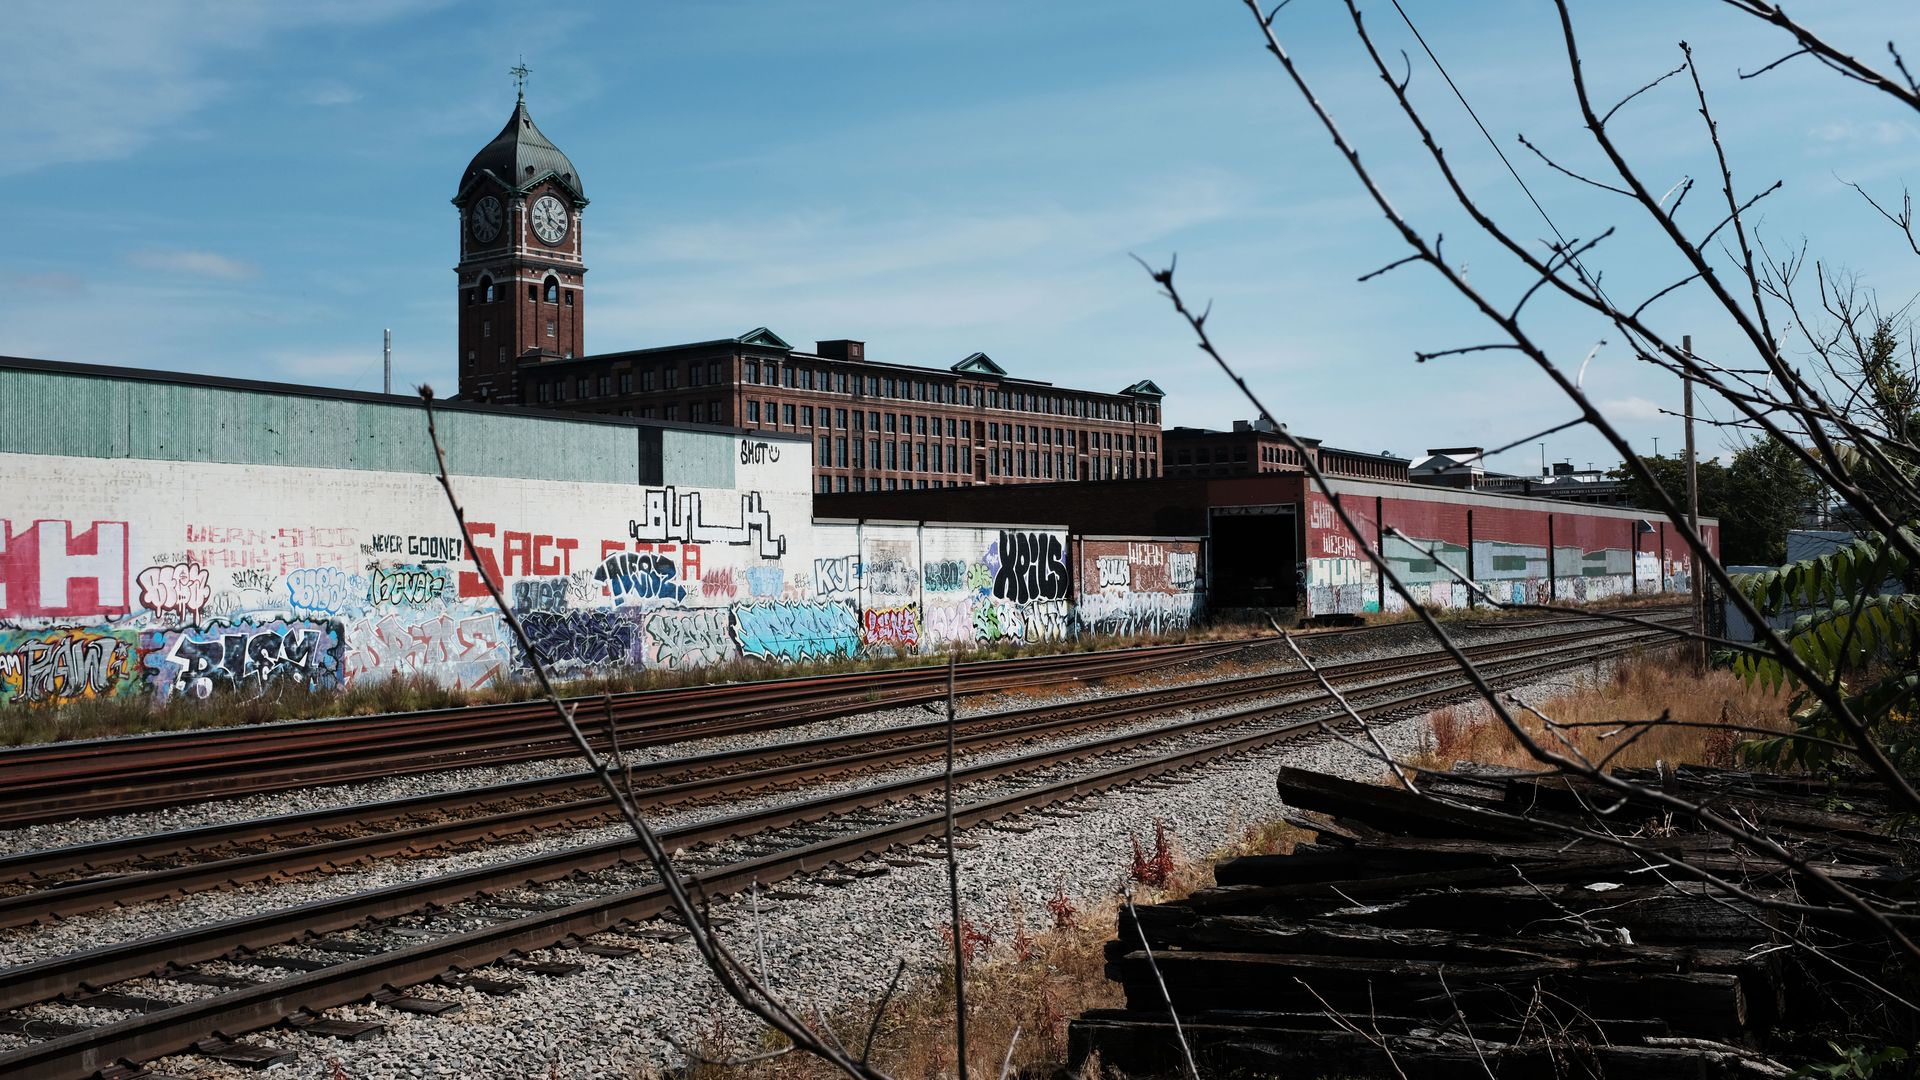 Railroad in a manufacturing city